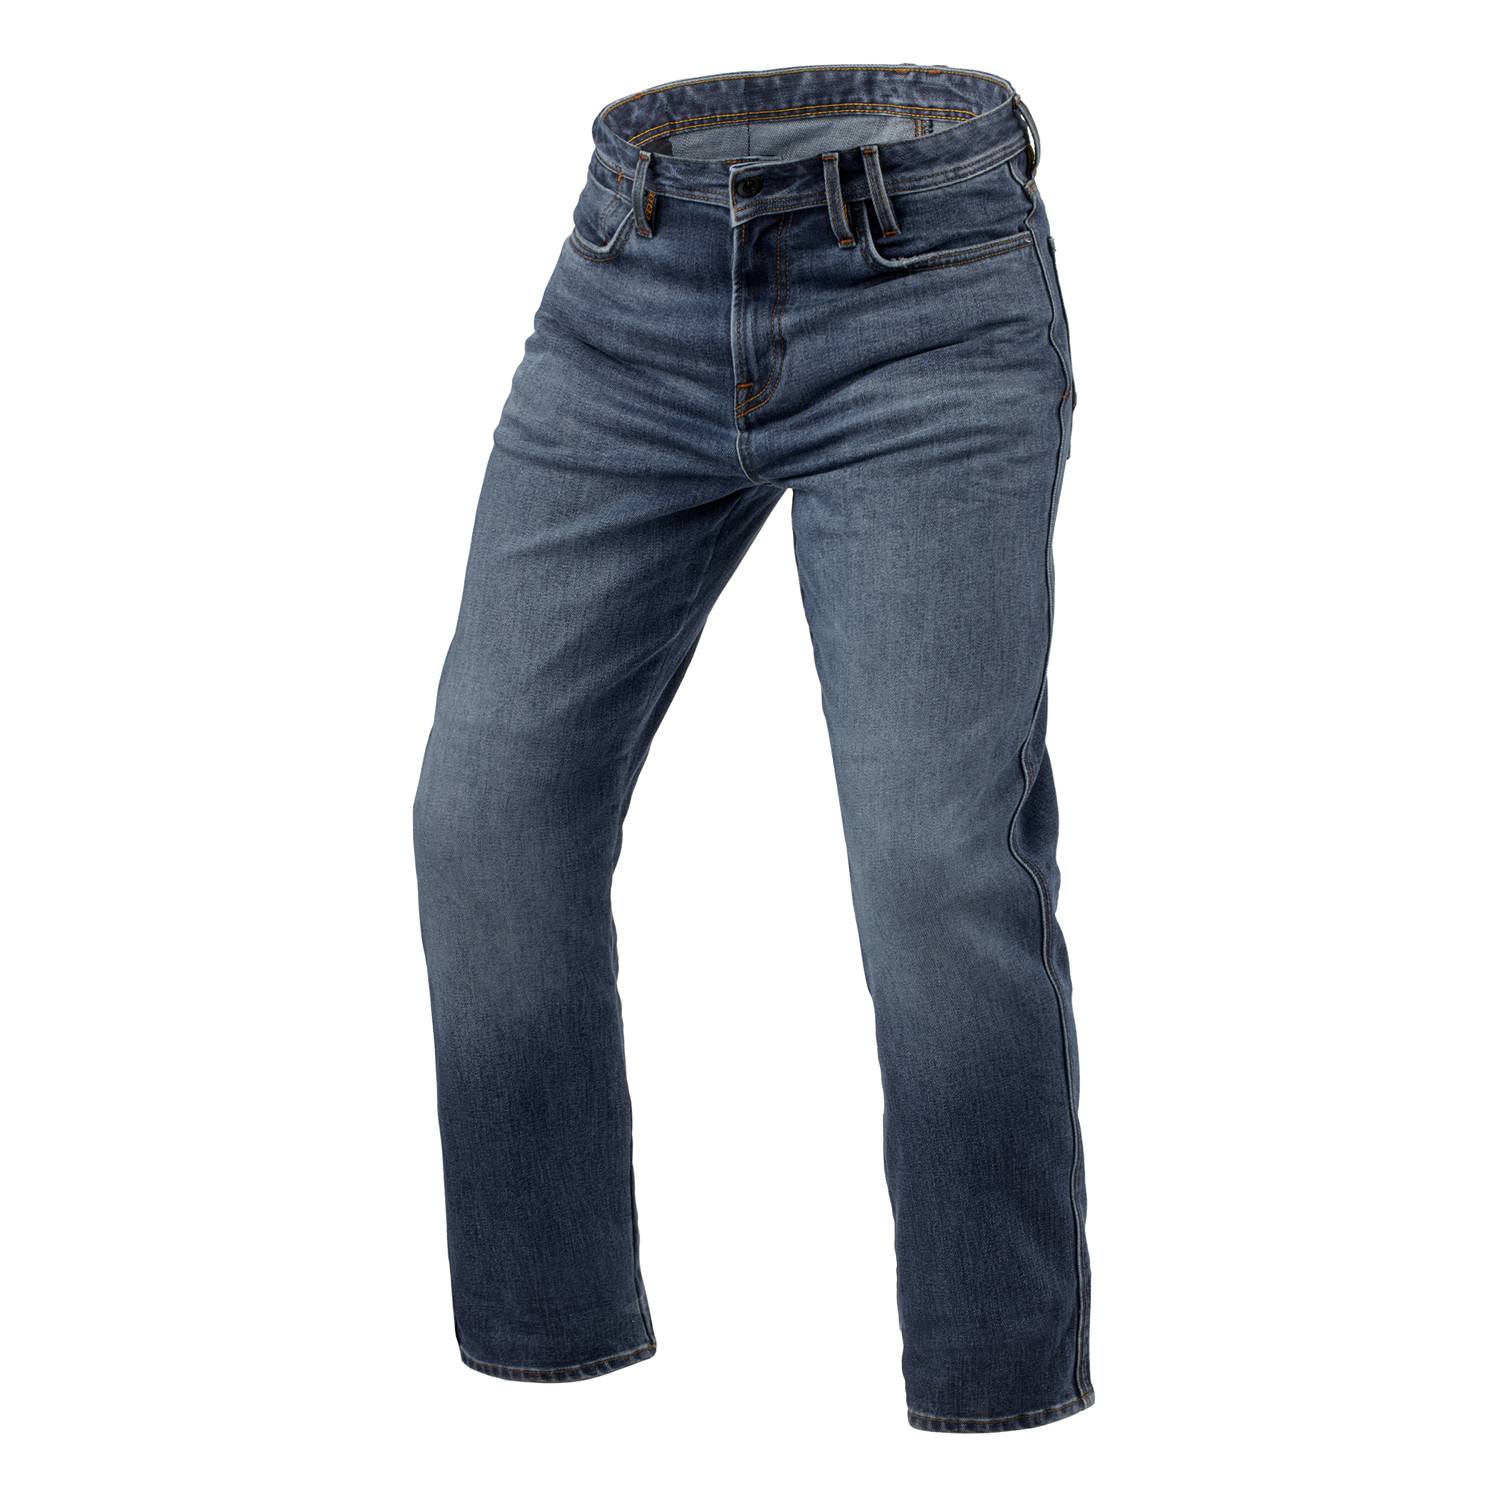 Image of REV'IT! Jeans Lombard 3 RF Medium Blue Stone L34 Motorcycle Jeans Size L34/W31 EN